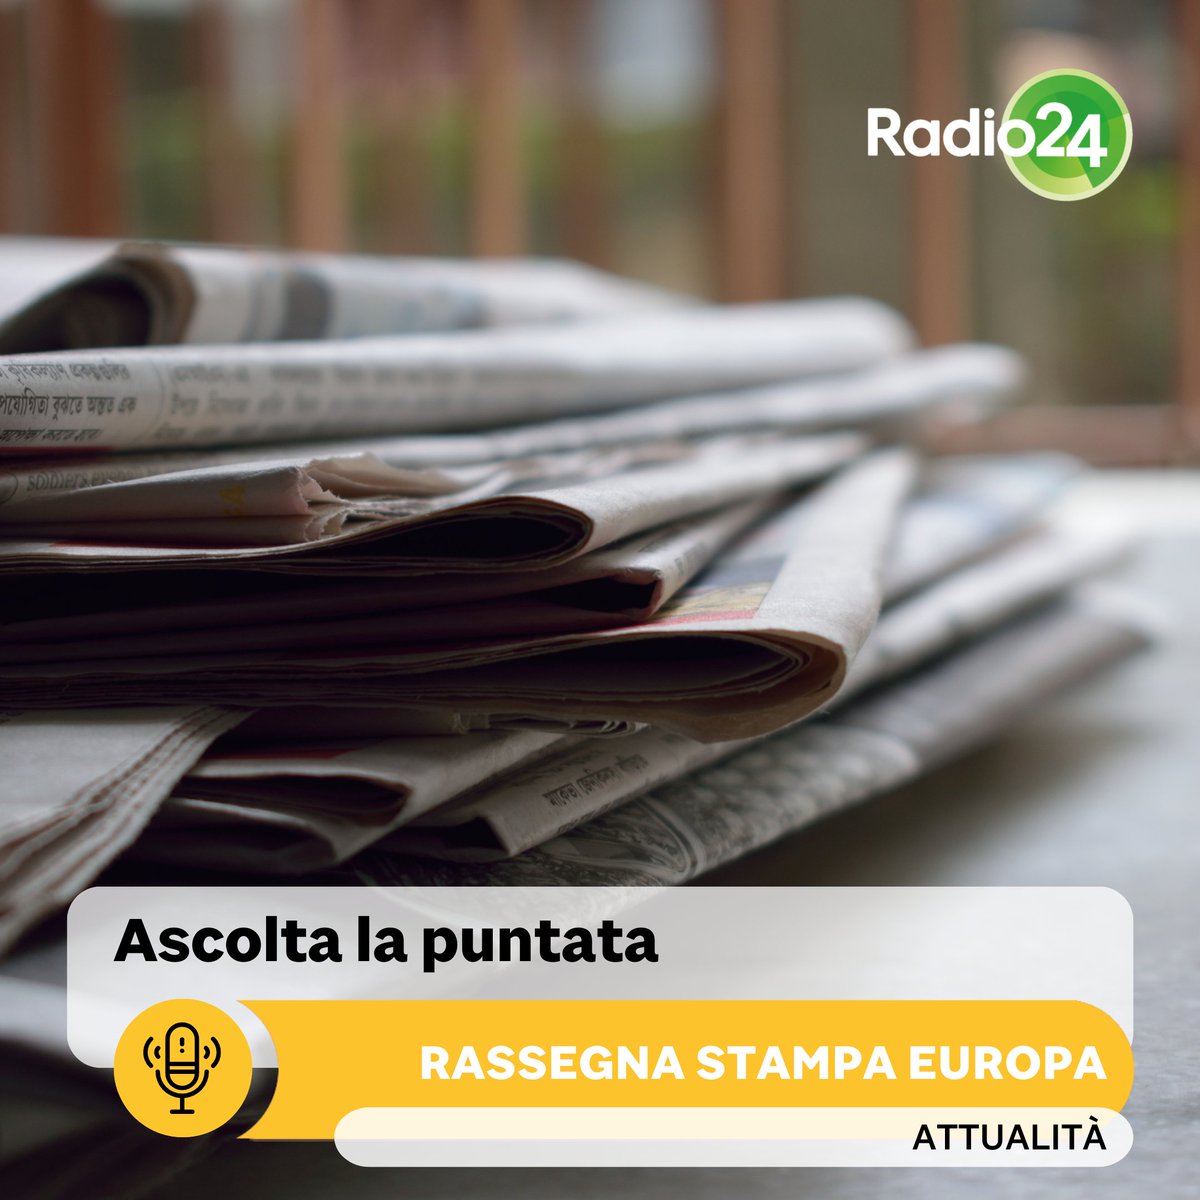 Le principali notizie internazionali commentate dalla nostra Giulia Crivelli. Ascolta la puntata, clicca qui: tinyurl.com/5ykzkcbb #Radio24 #RassegnaStampa #Europa